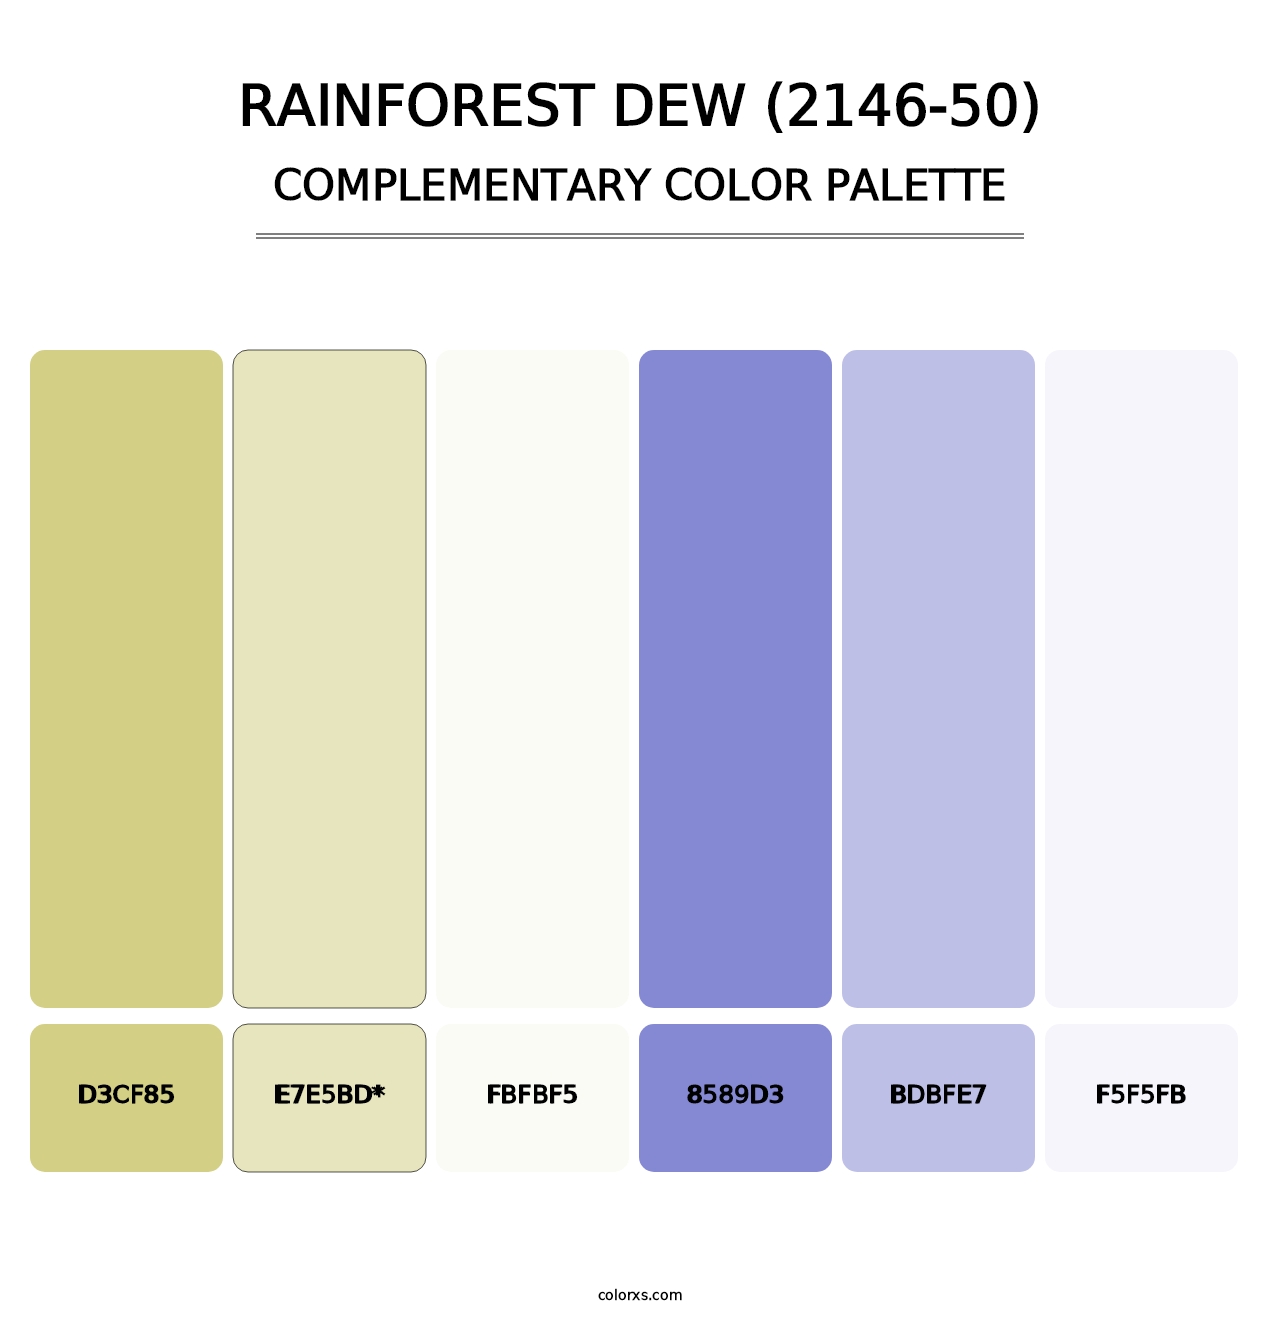 Rainforest Dew (2146-50) - Complementary Color Palette